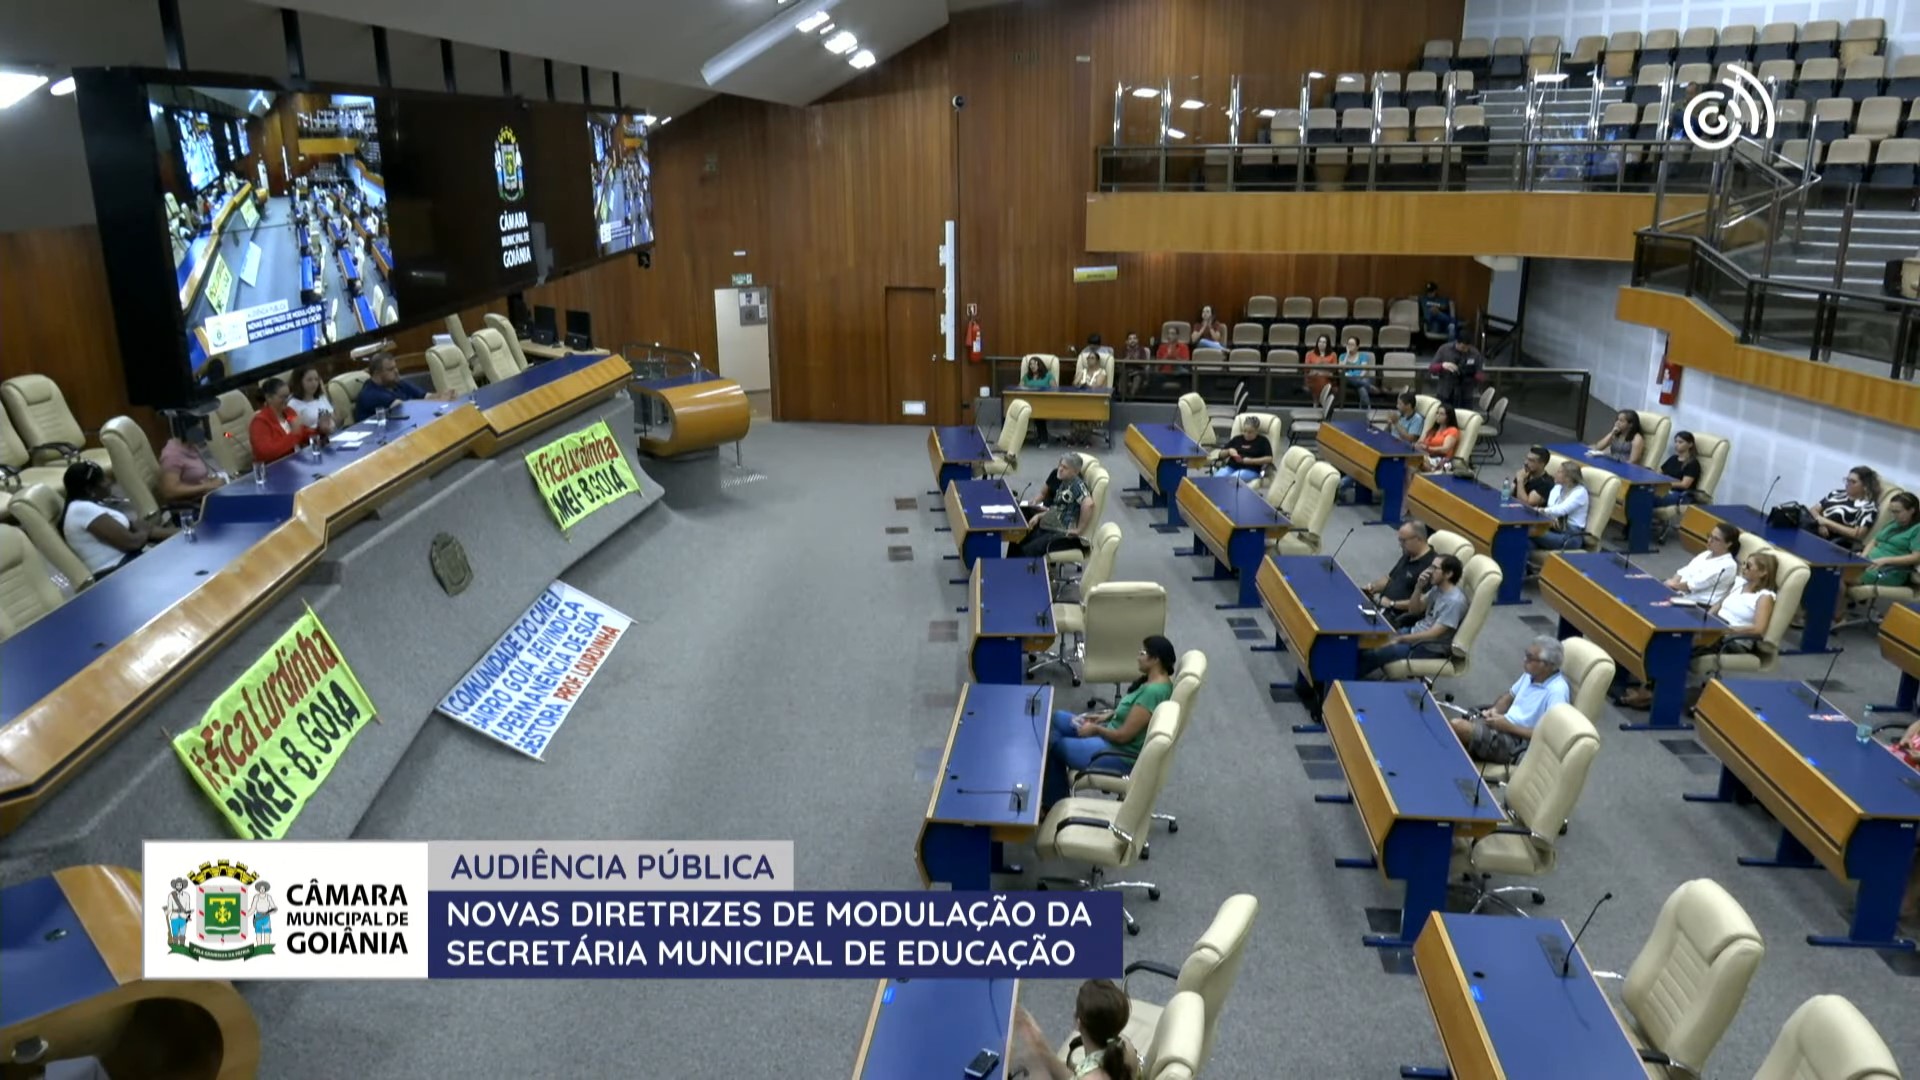 Em audiência púbica, trabalhadores da educação reclamam de modulações da Secretaria Municipal de Educação